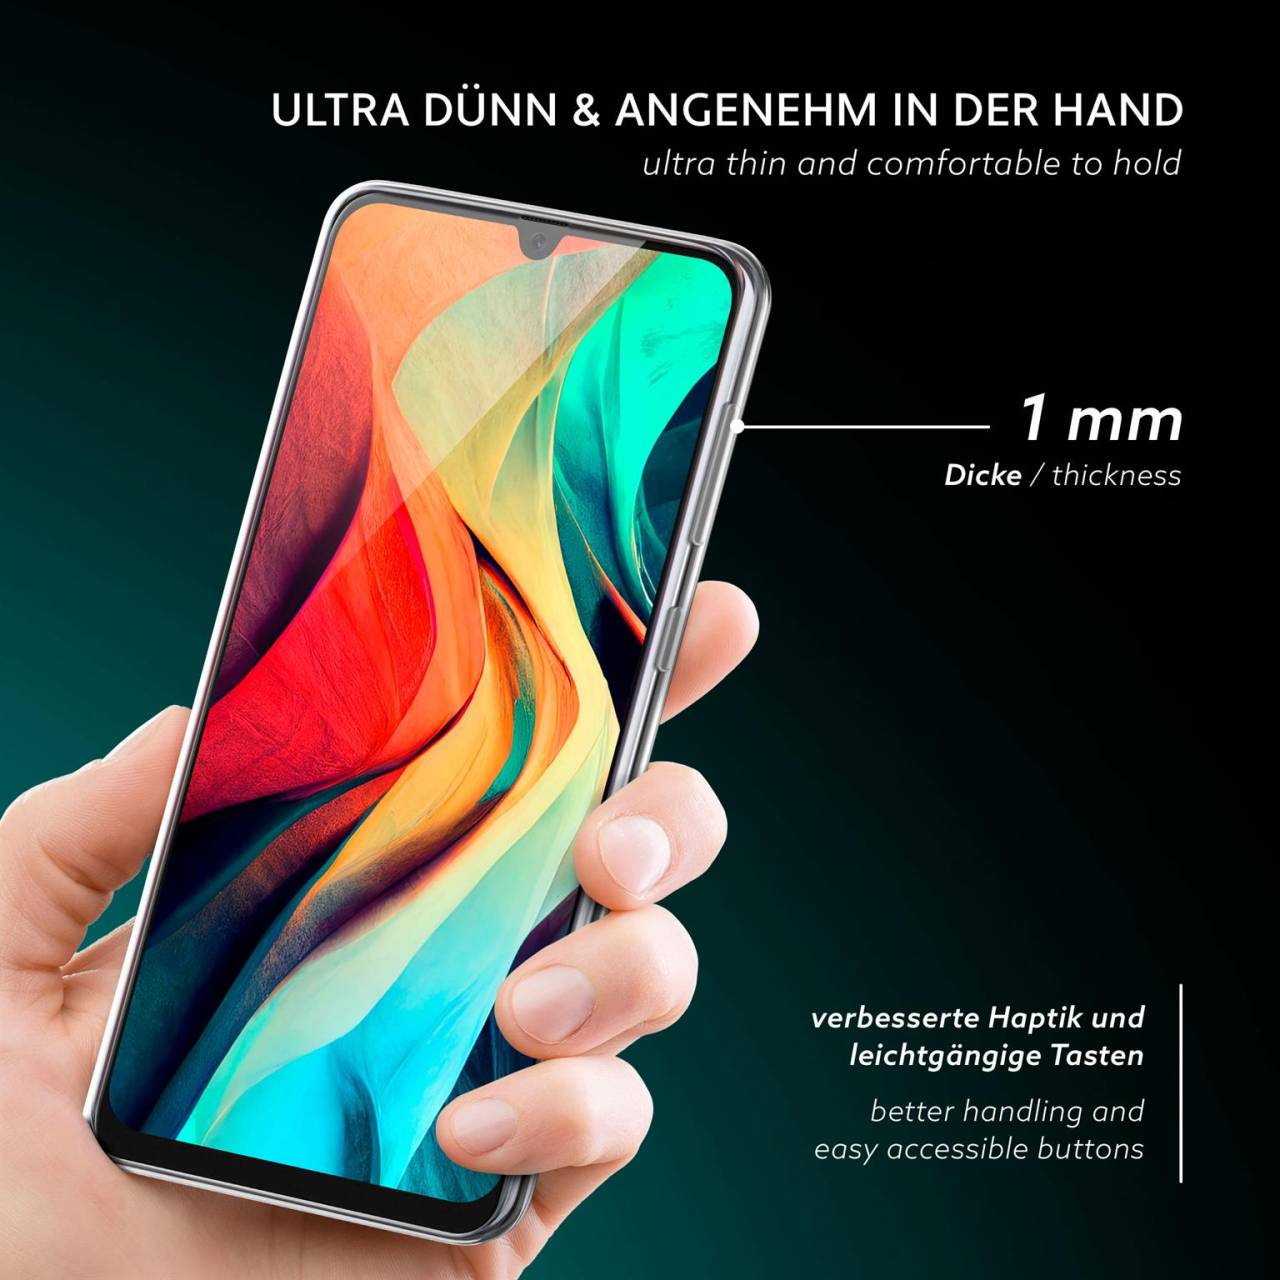 moex Aero Case für Samsung Galaxy A50 – Durchsichtige Hülle aus Silikon, Ultra Slim Handyhülle